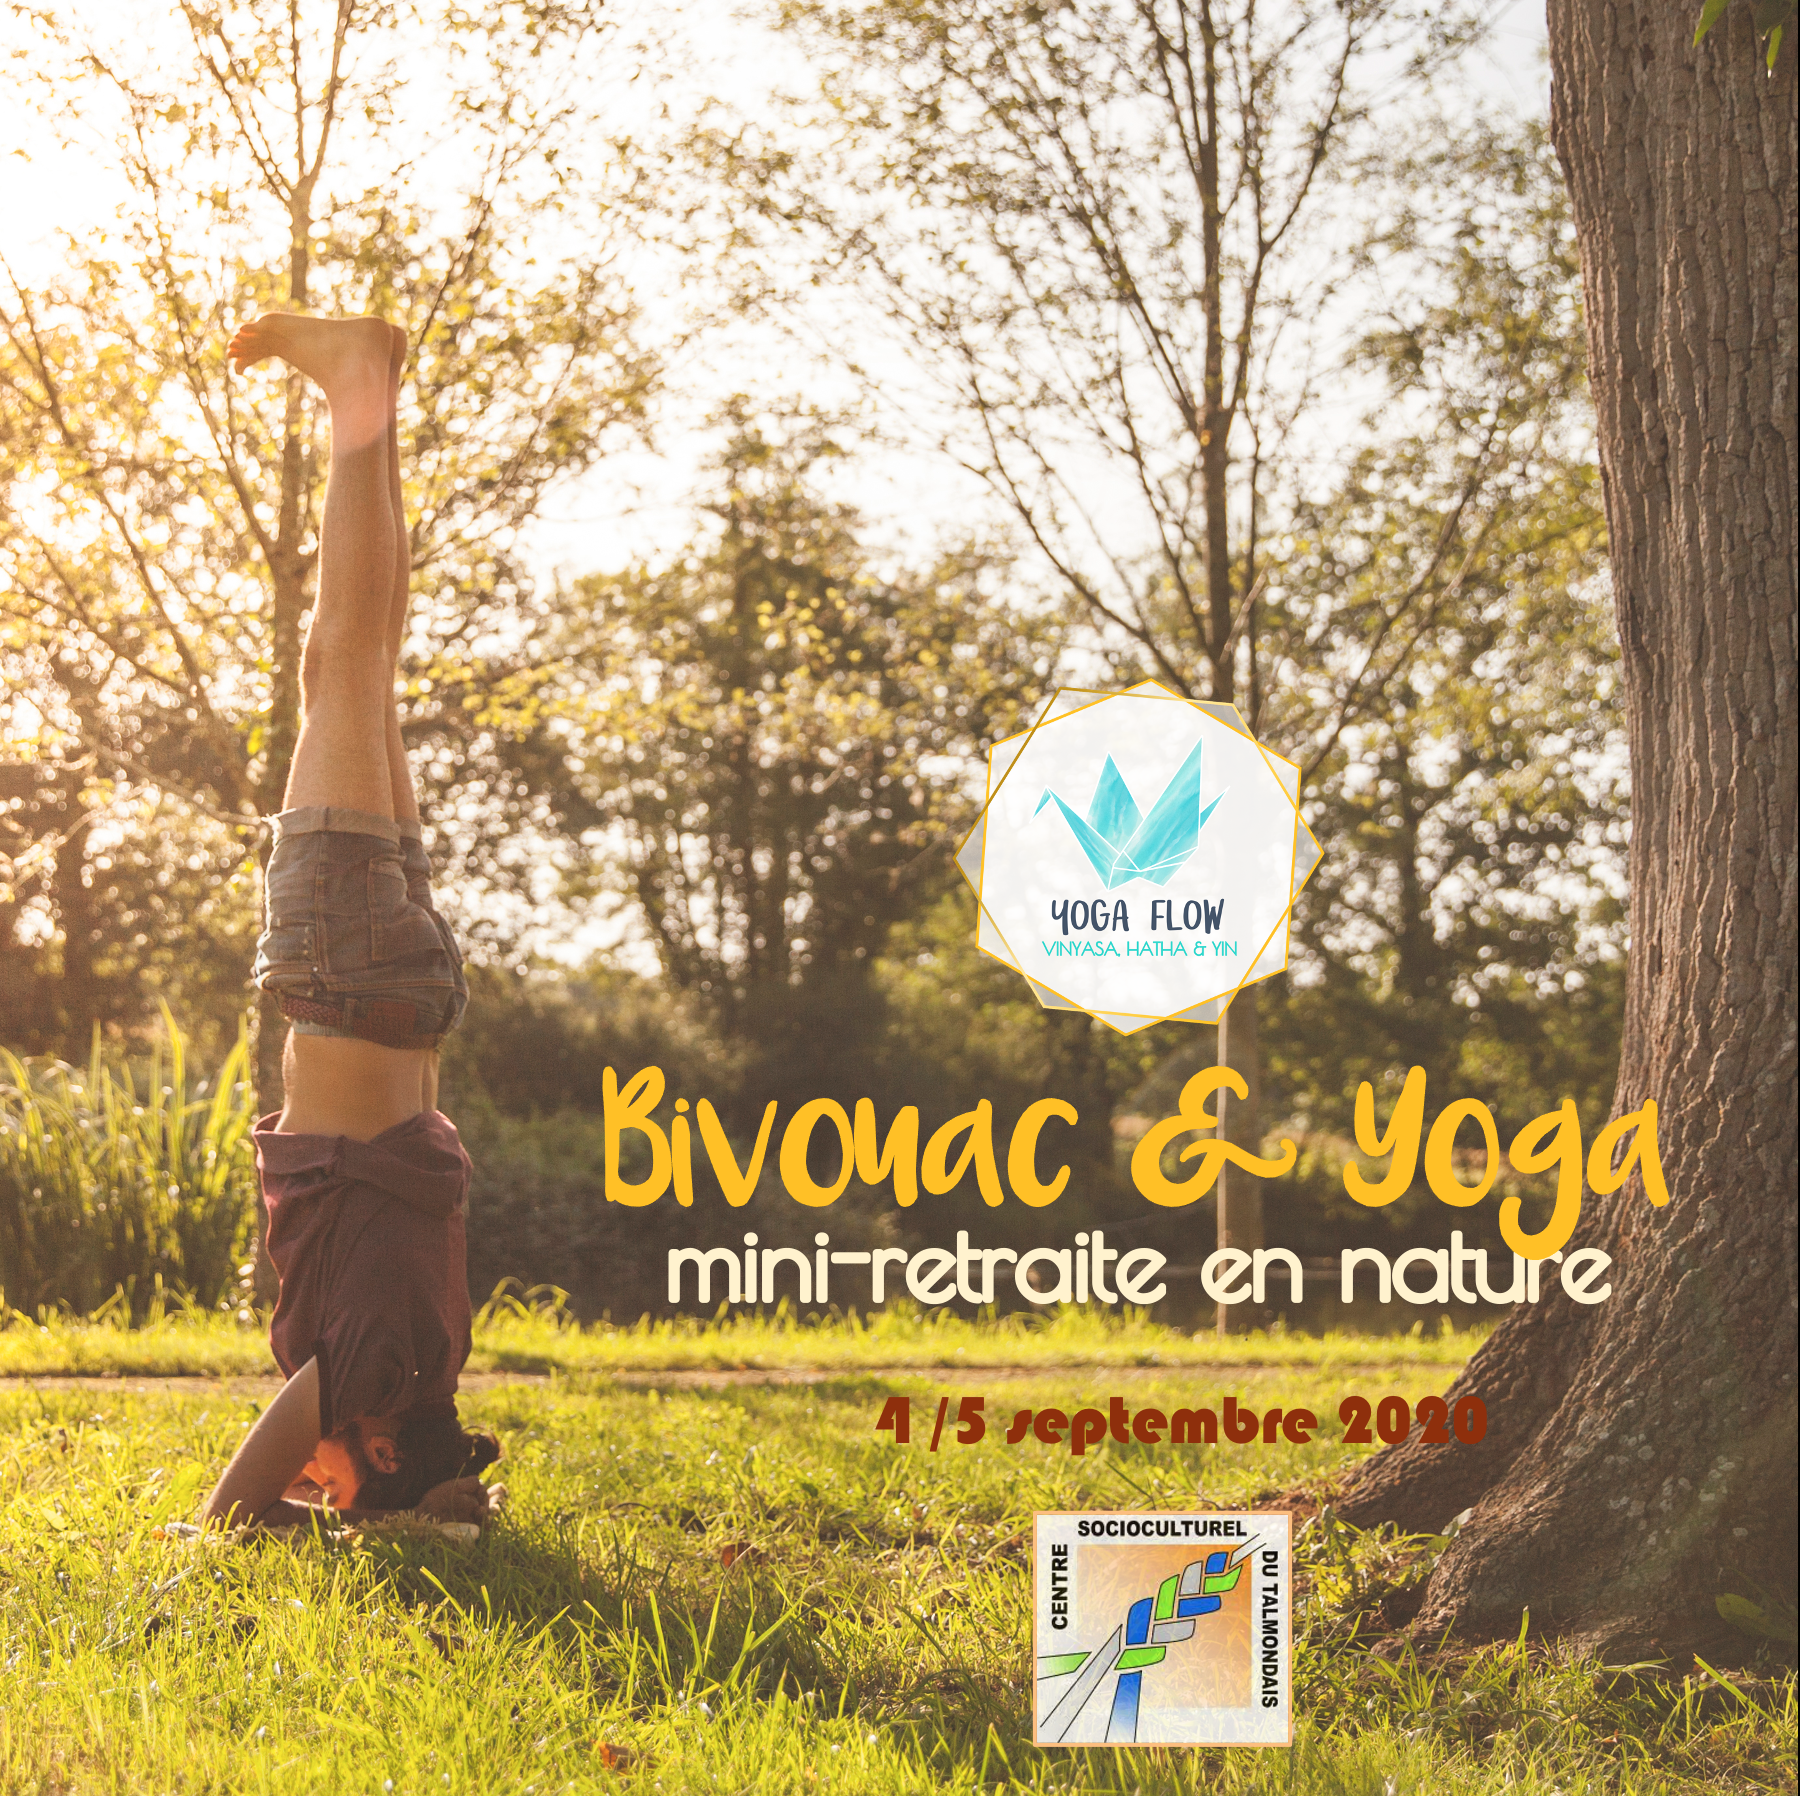 Affiche mini retraite de yoga et bivouac en Vendée 4/5 septembre 2020